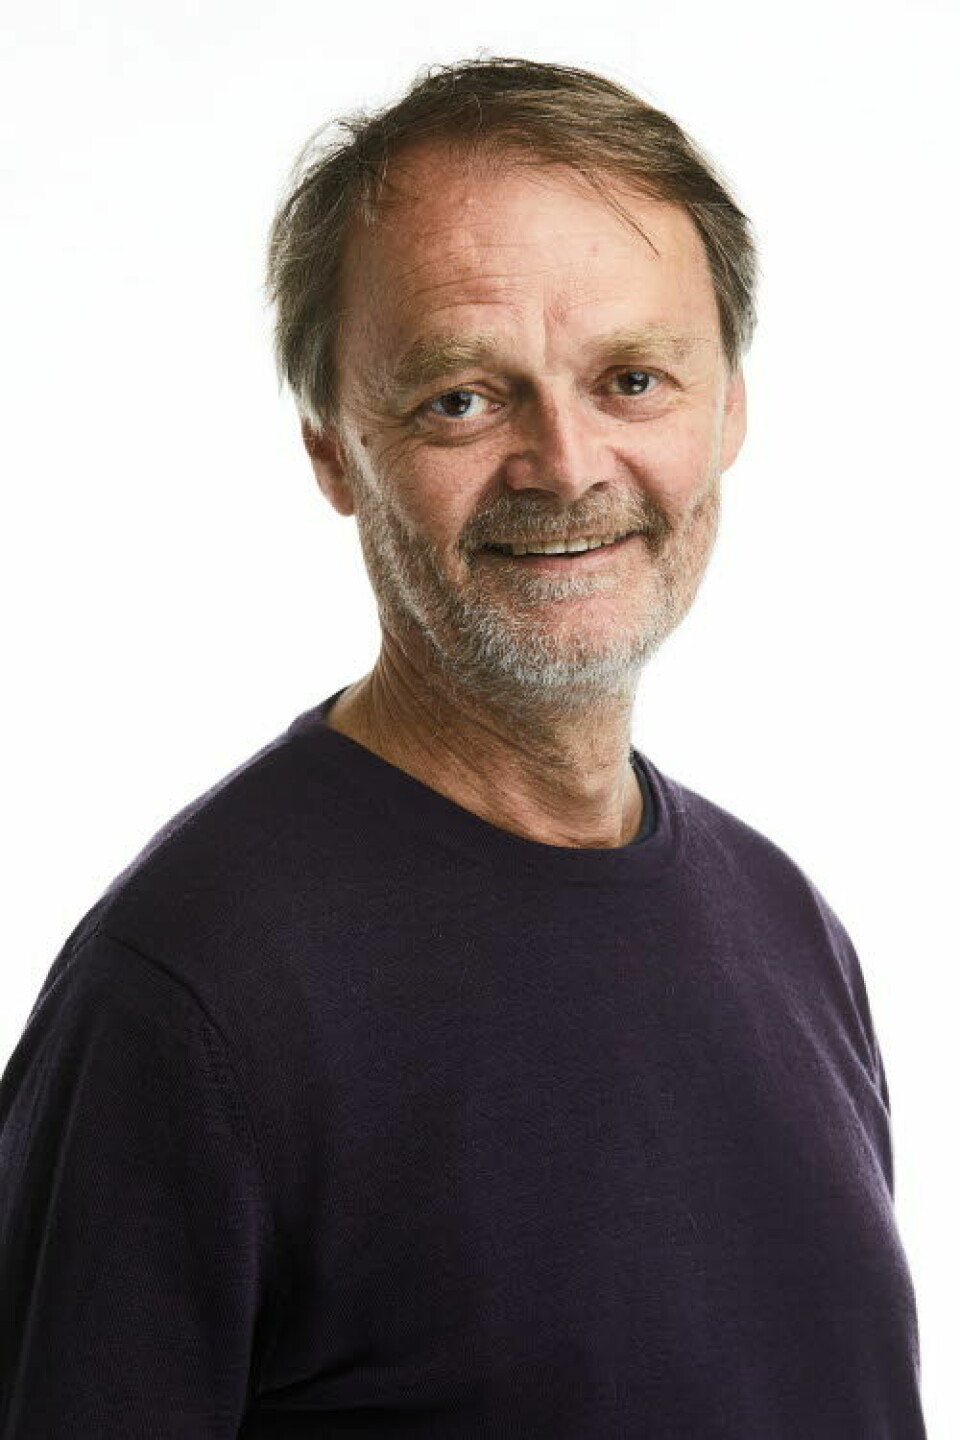 Knut Røed, dr.polit. i samfunnsøkonomi og seniorforsker ved Frischsenteret.

            
                Foto:  Frischsenteret